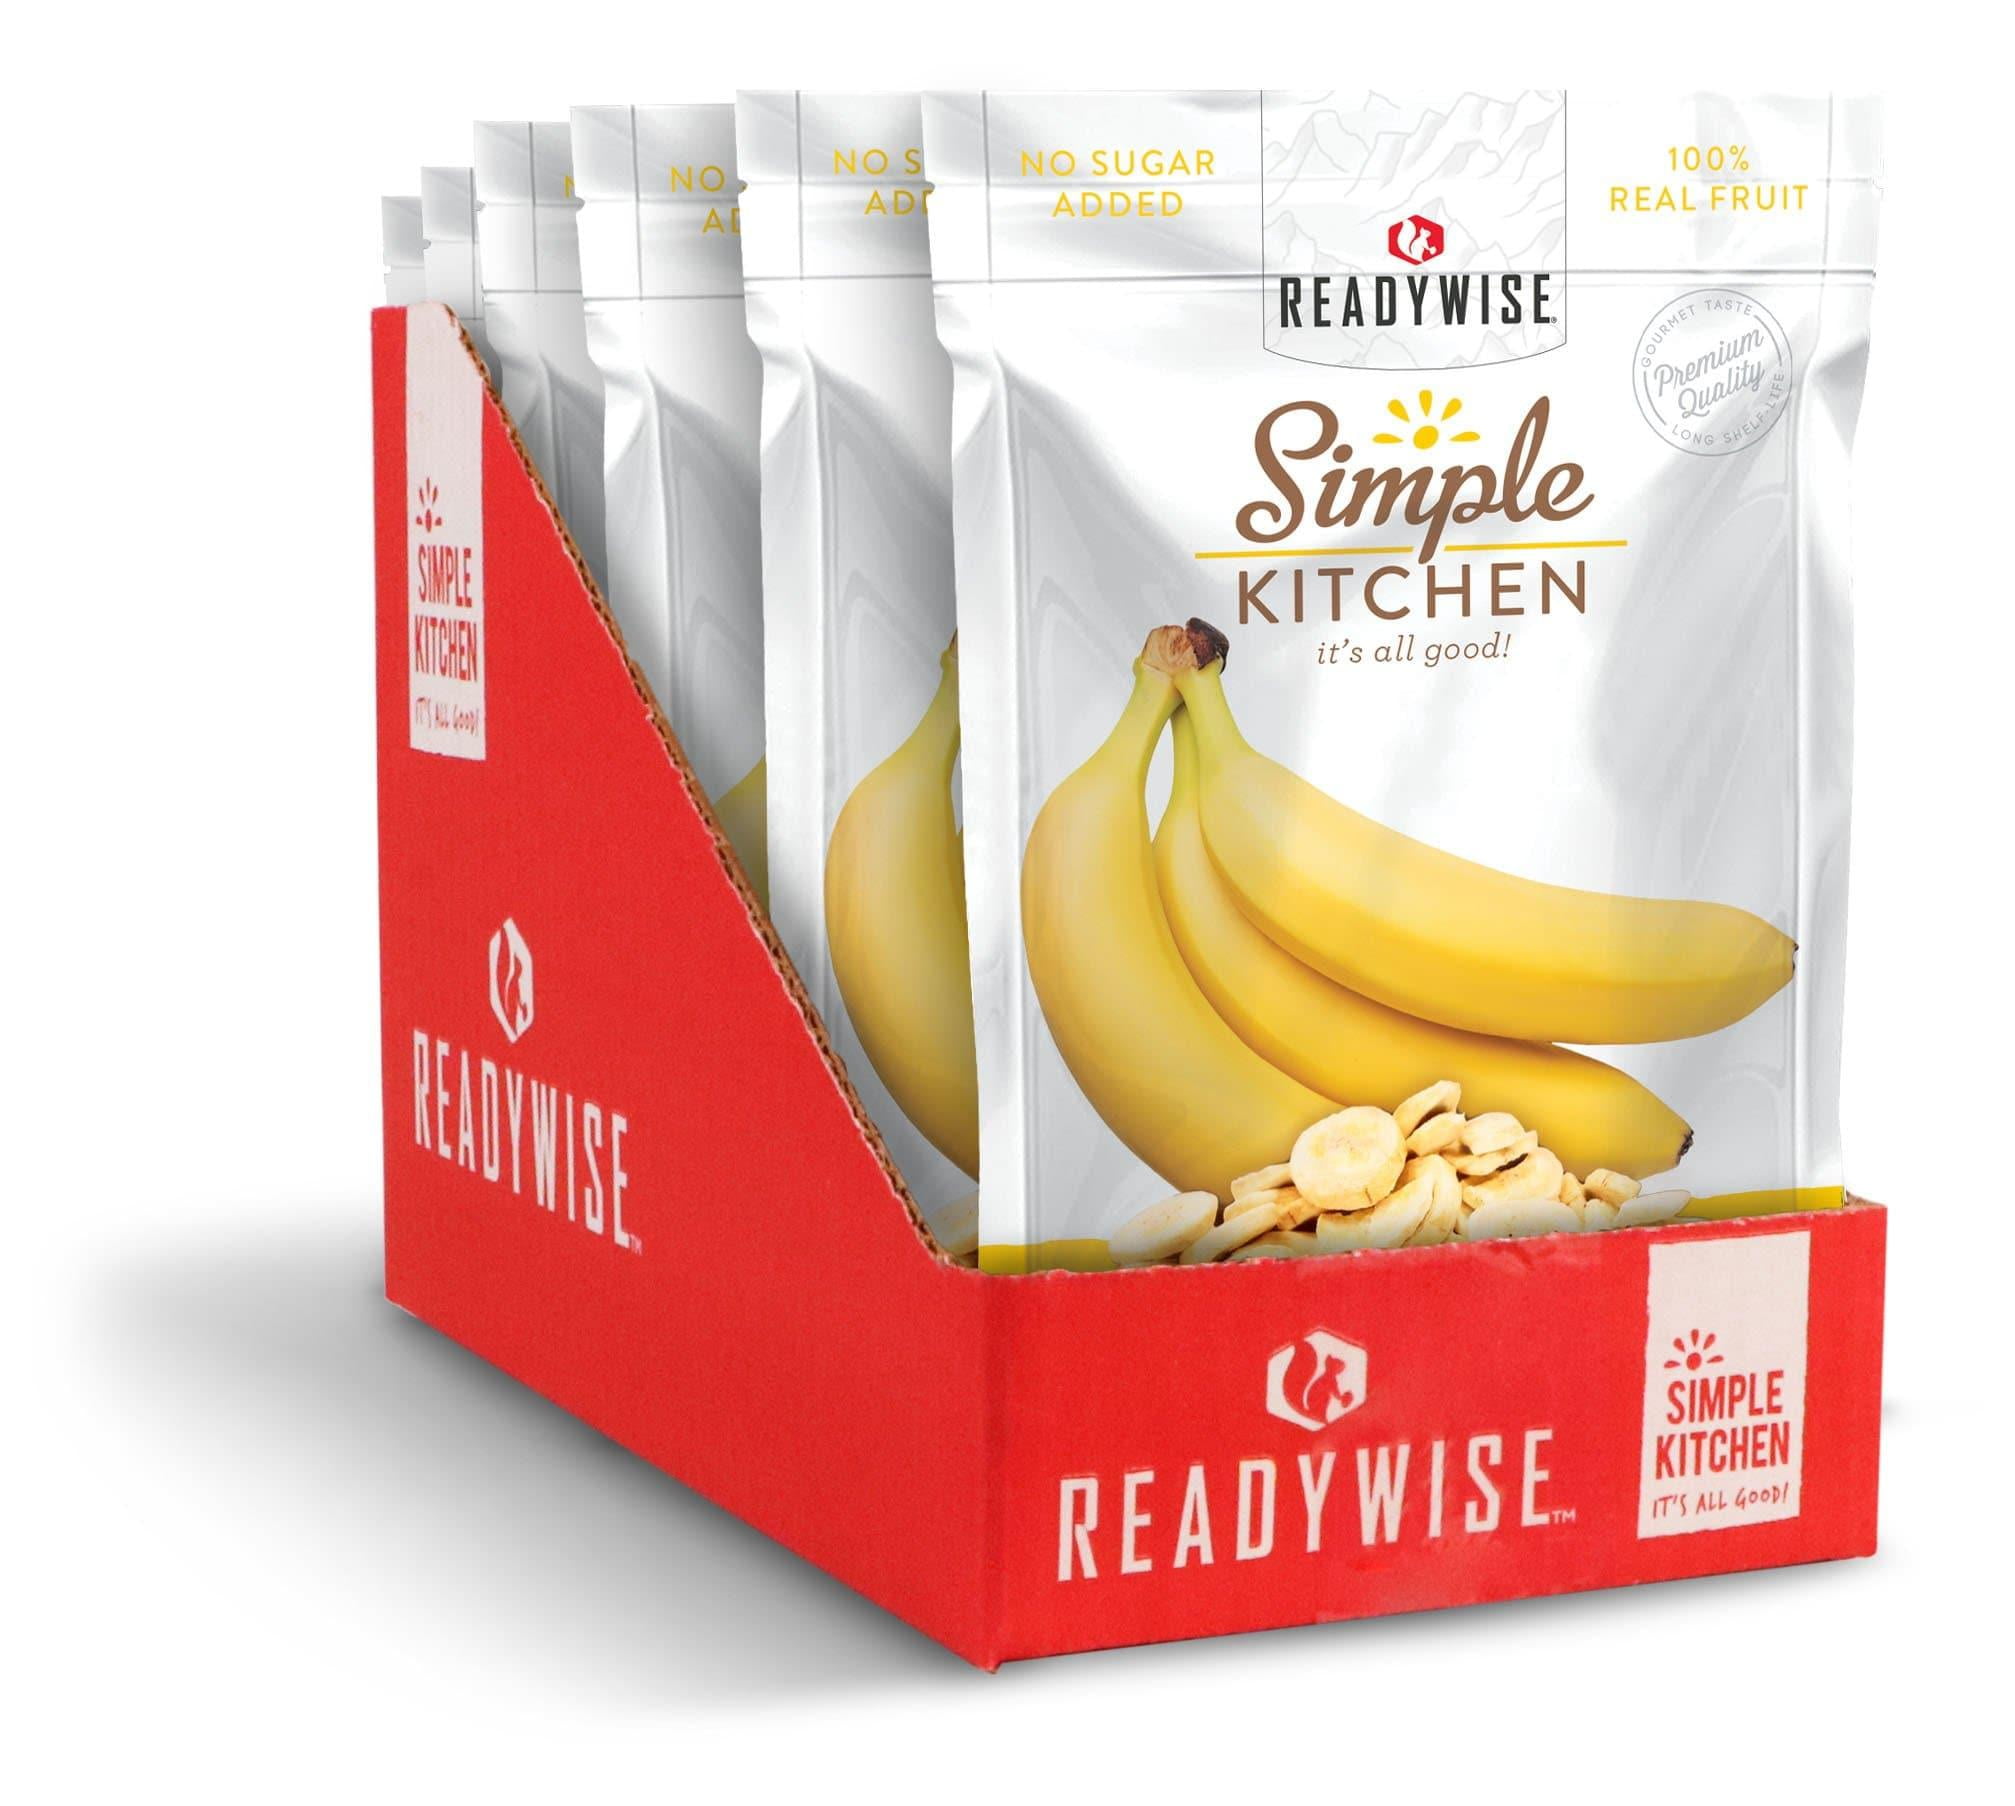 Freeze Dried Bananas at  - free shipping $99+